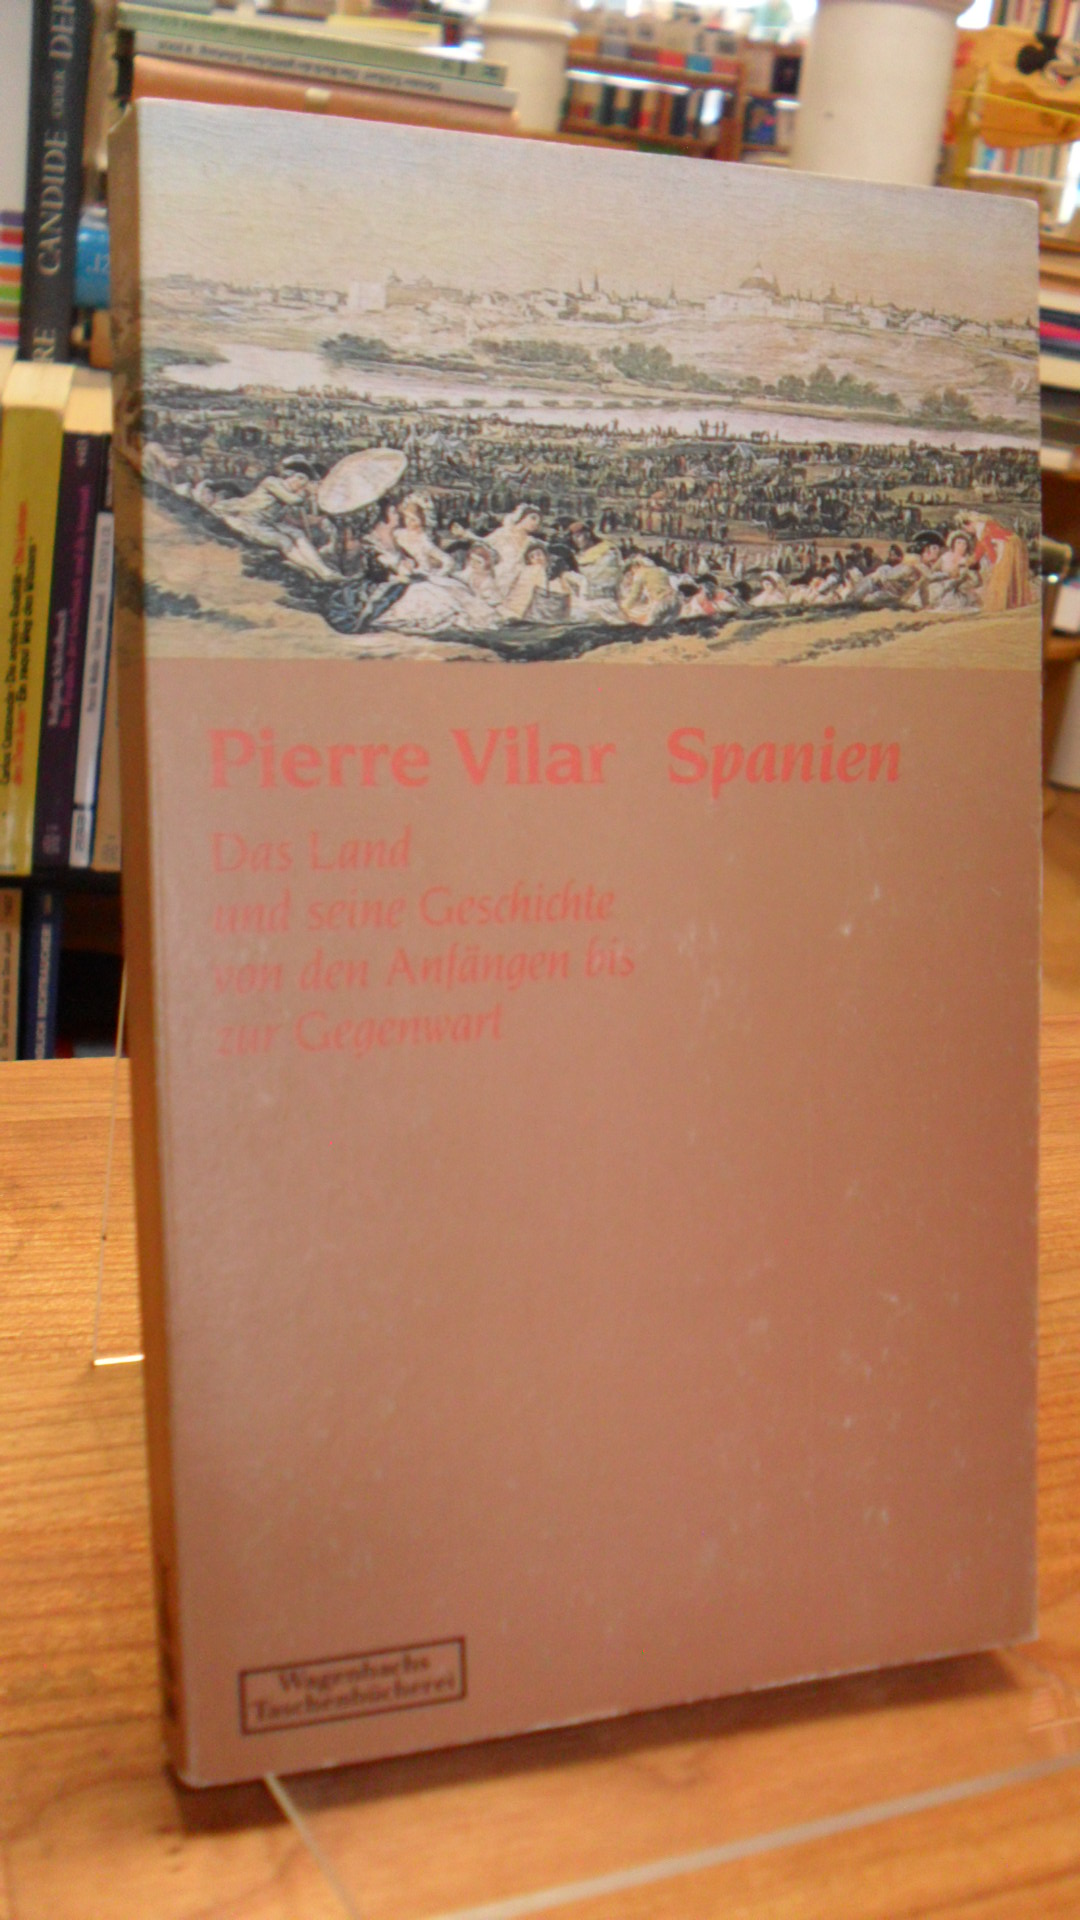 Spanien / Vilar, Spanien – Das Land und seine Geschichte von den Anfängen bis zu